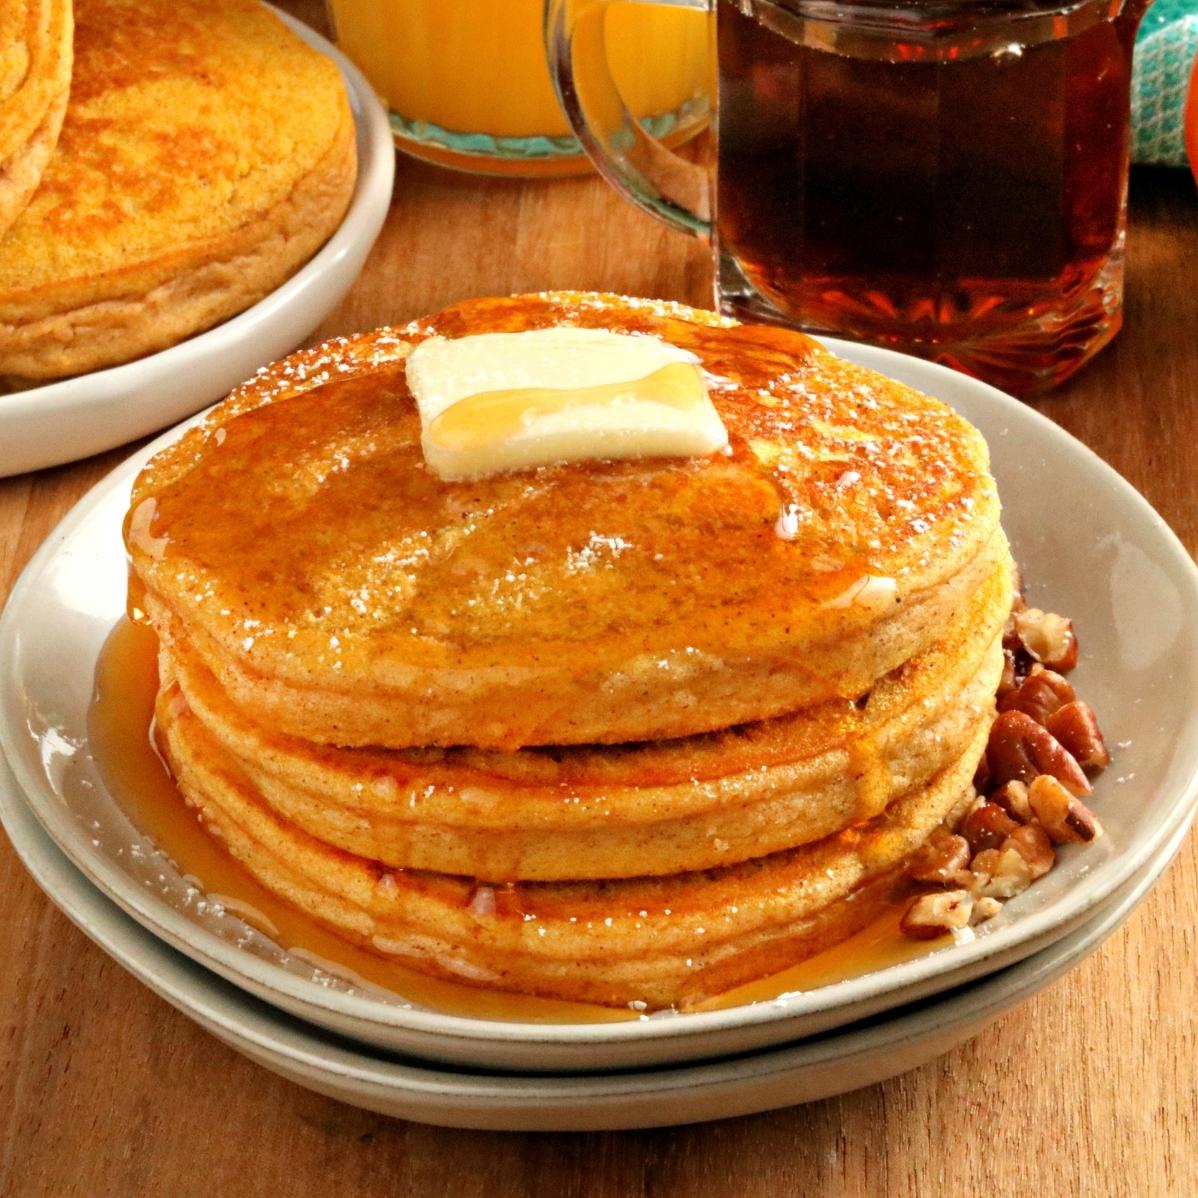  Fluffy pumpkin pancakes for a cozy weekend breakfast! 🥞🎃